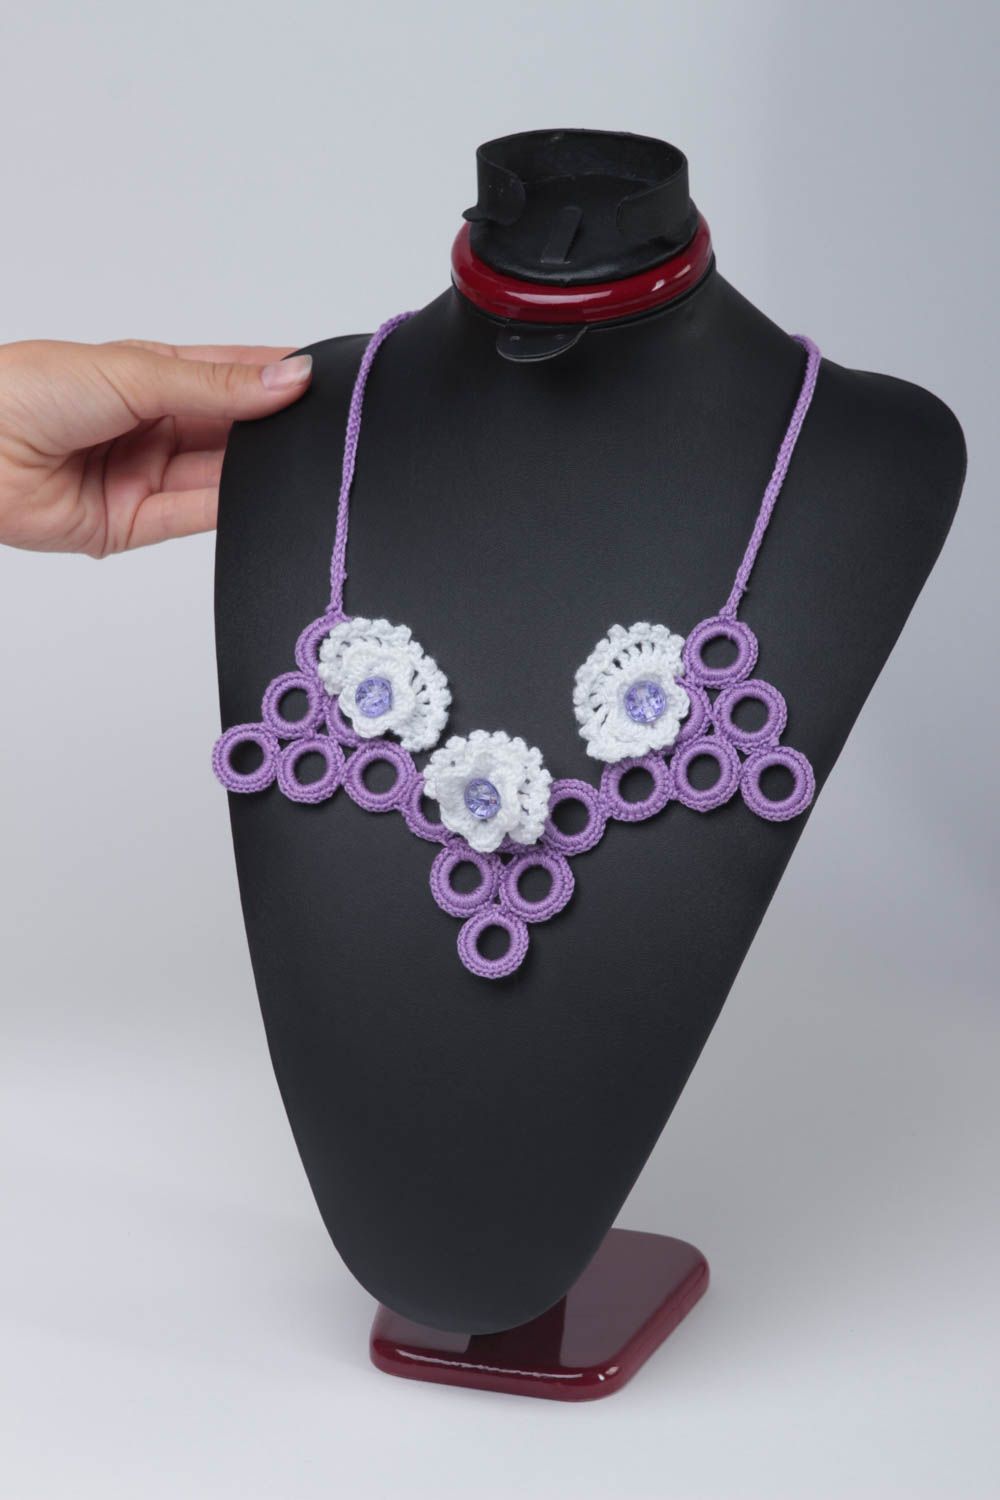 Collier textile fait main Bijou textile Accessoire femme original violet blanc photo 2